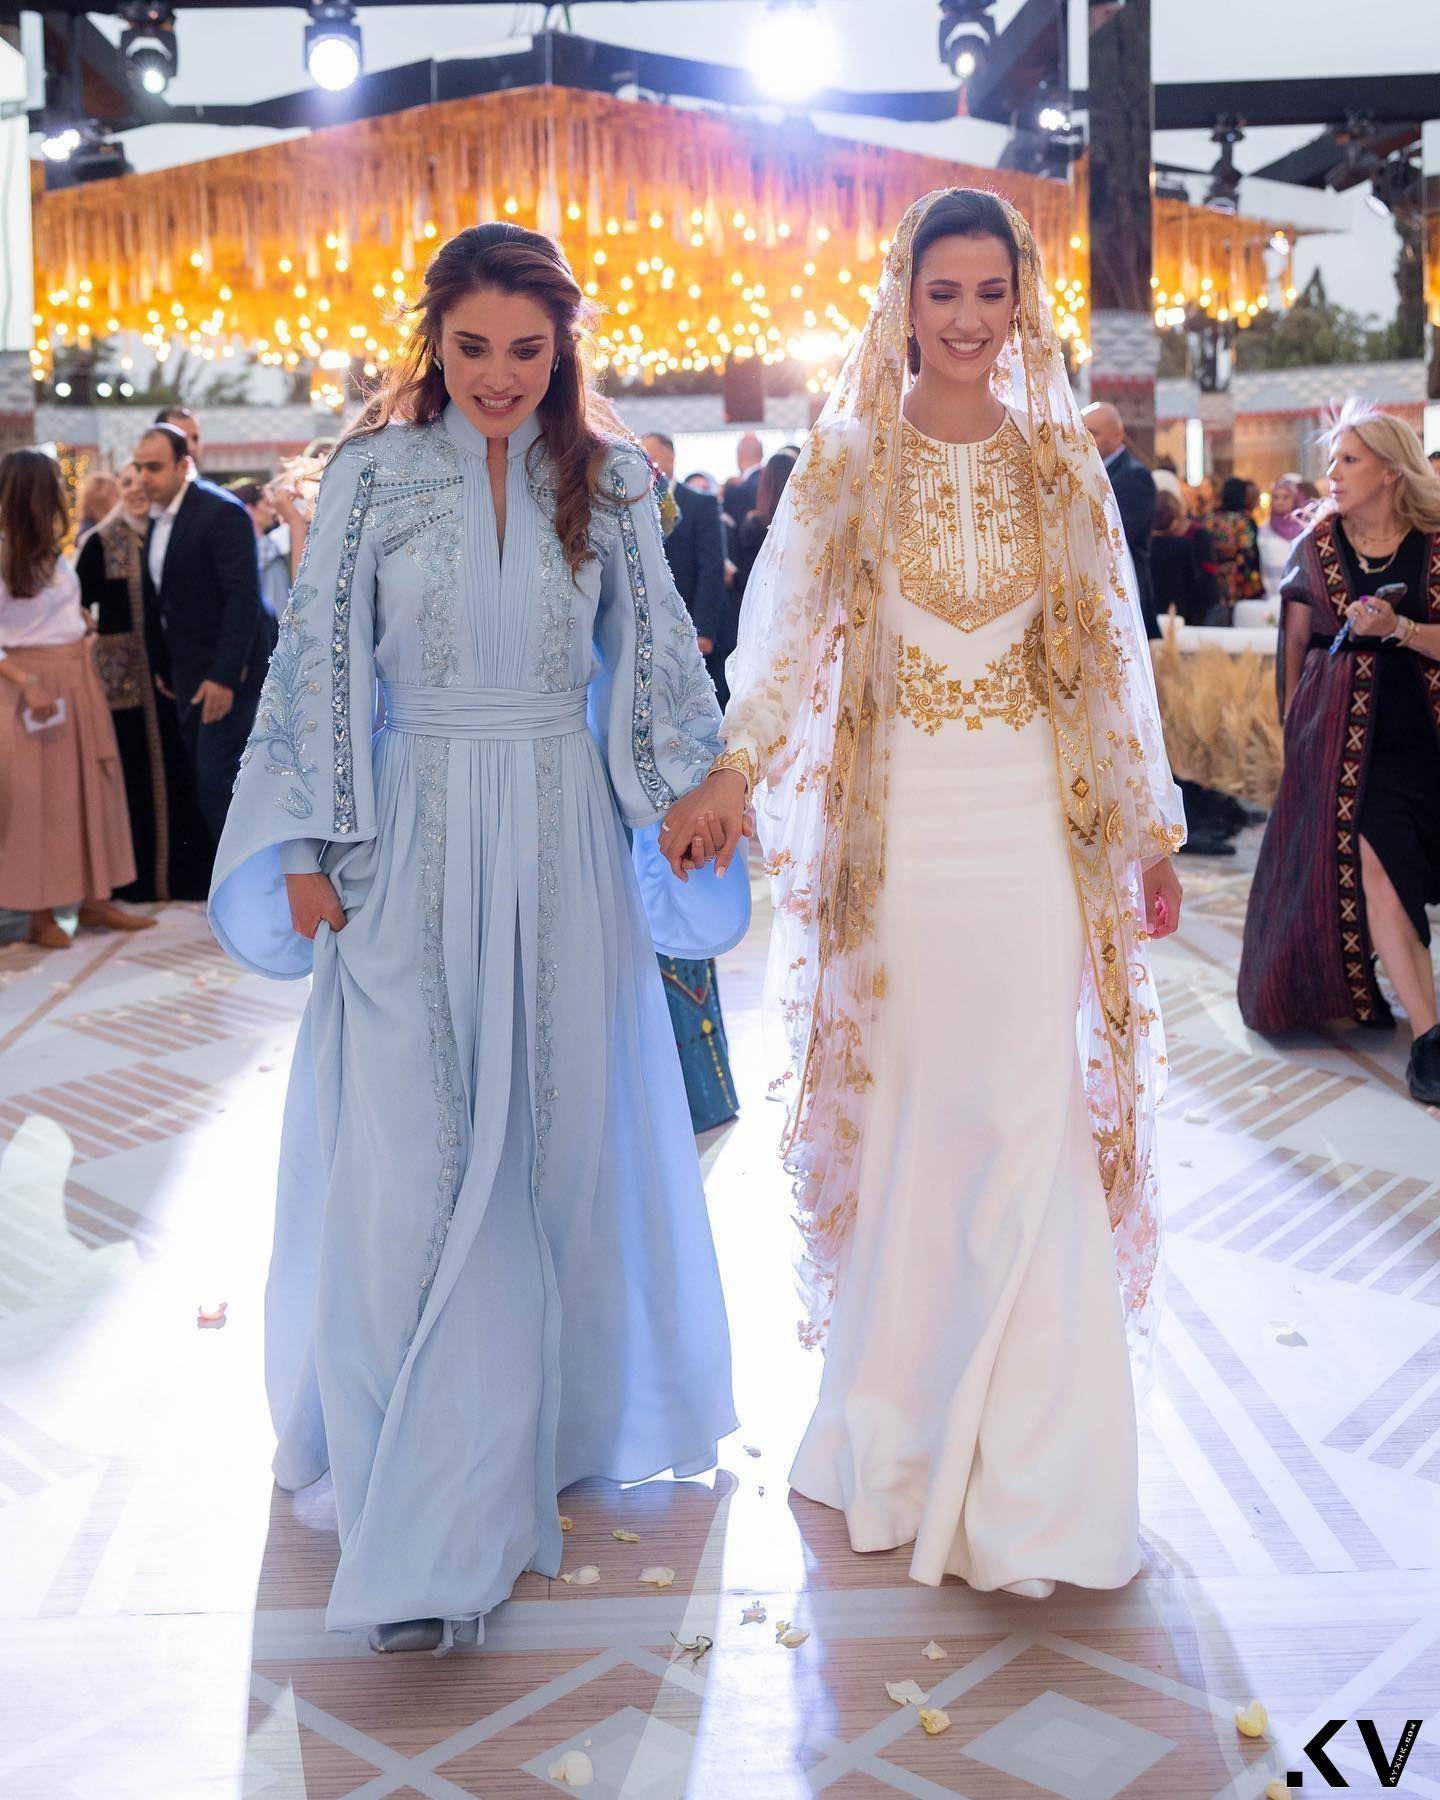 沙乌地阿拉伯千金将成约旦“最美王妃”　婚前派对礼服绣两国元素 名人名流 图5张